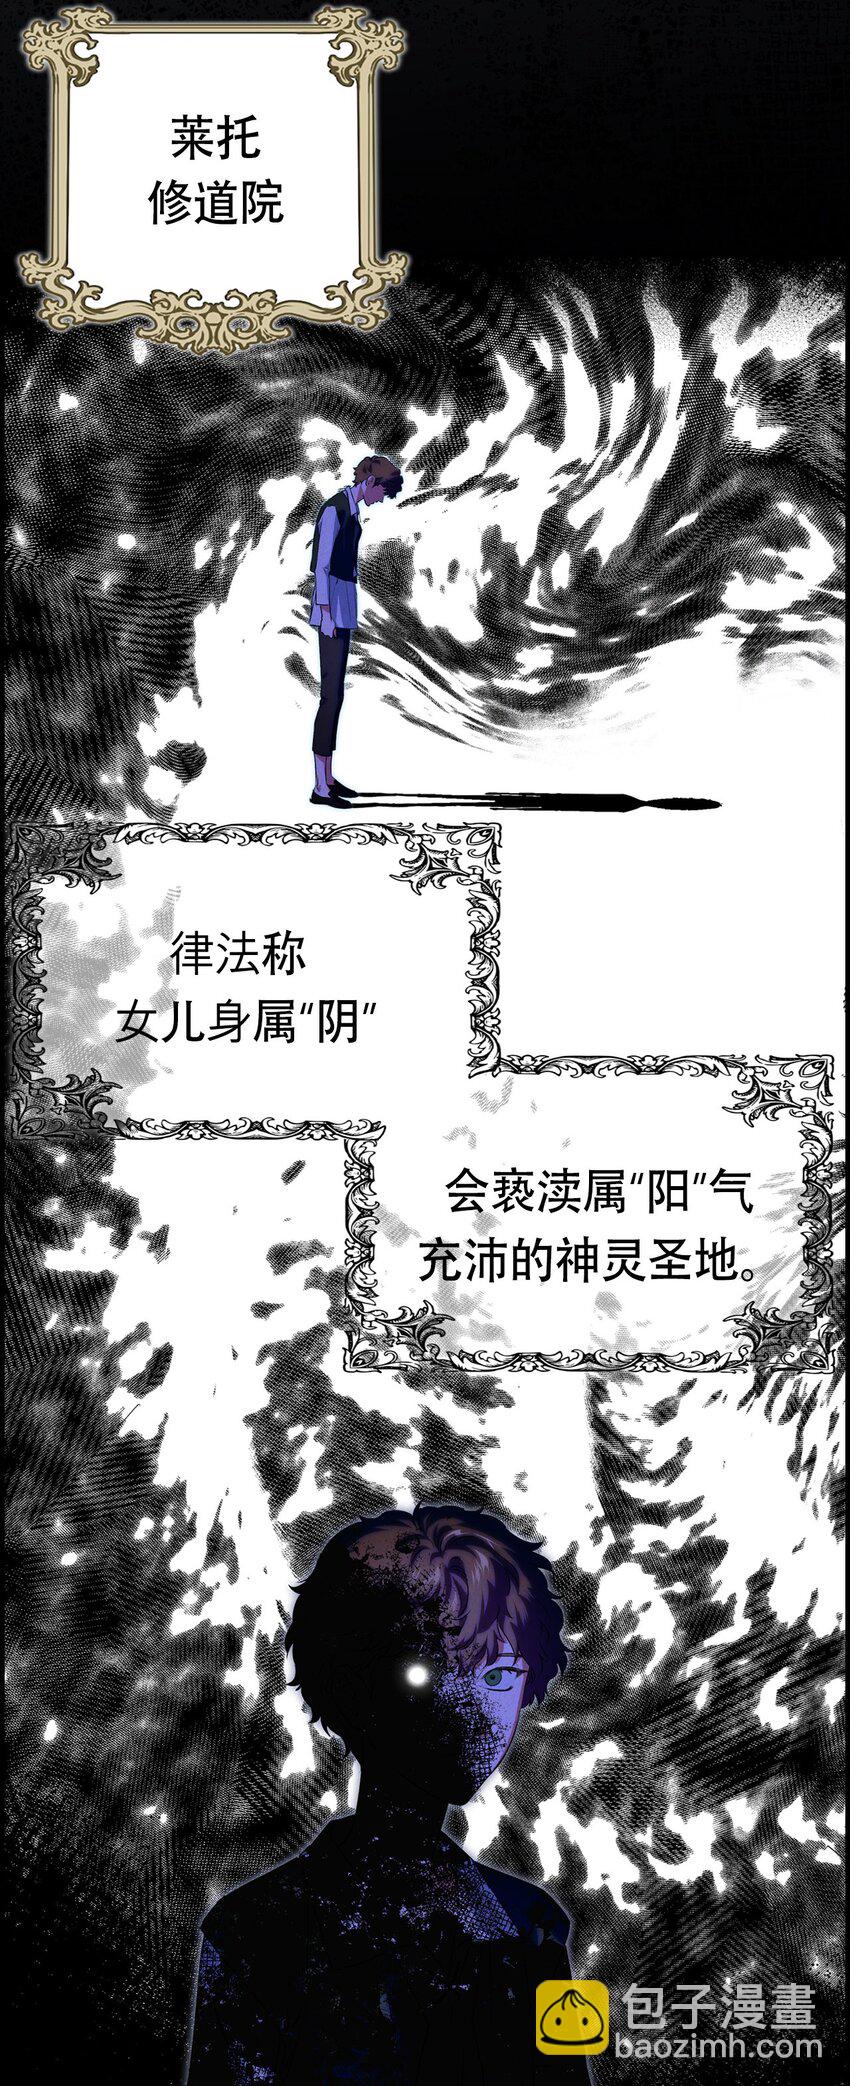 冰燈騎士 - 序章福利 開啓征程 - 4